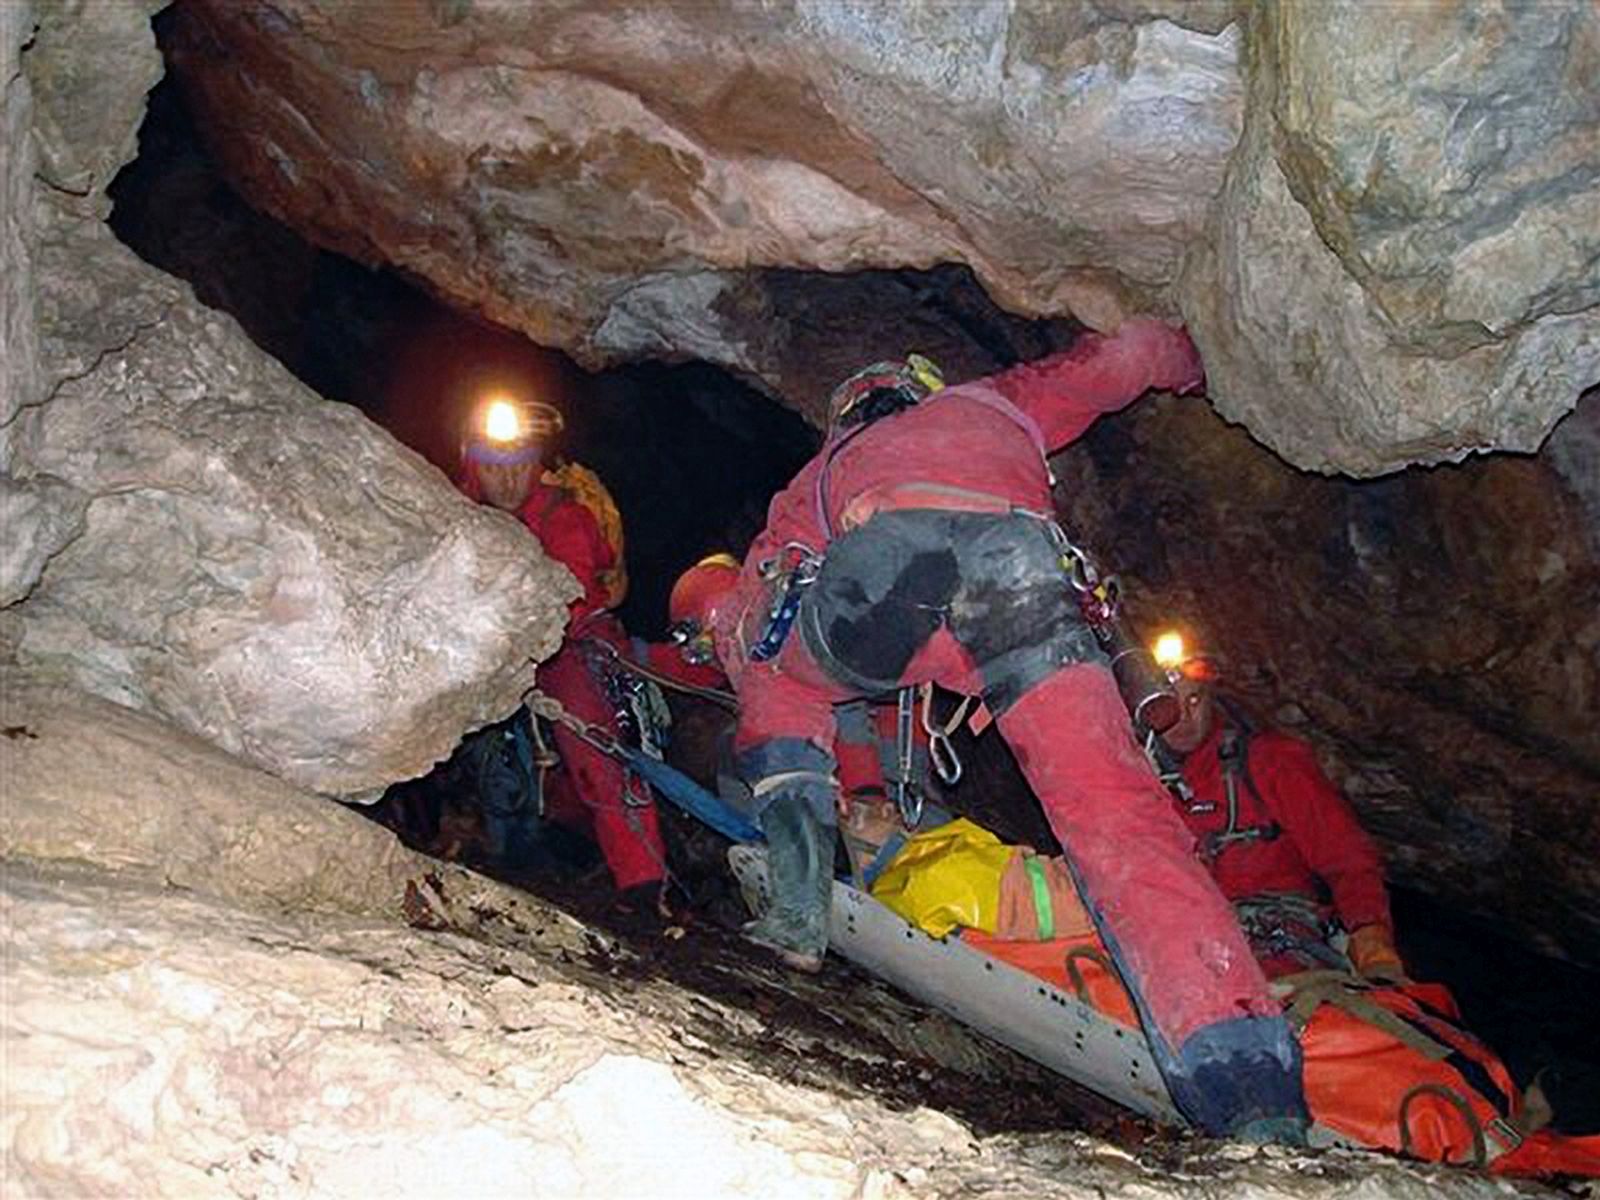 Zagreb, 17.07.2011 - Arhivska fotografija od 21.10.2006. godine prikazuje pripadnike Hrvatske gorske slube spaavanja tijekom vjebe izvlaèenja ozlijeðene osobe iz pilje. Na junom Velebitu u jami Kita Gaæeina na 300 metara dubine danas je pozlilo jednom speleologu koji je pao u komu, izvijestila je poslijepodne Hrvatske gorska sluba spaavanja (HGSS) koja je pokrenula akciju spaavanja. 
foto FaH/ HGSS/ ds